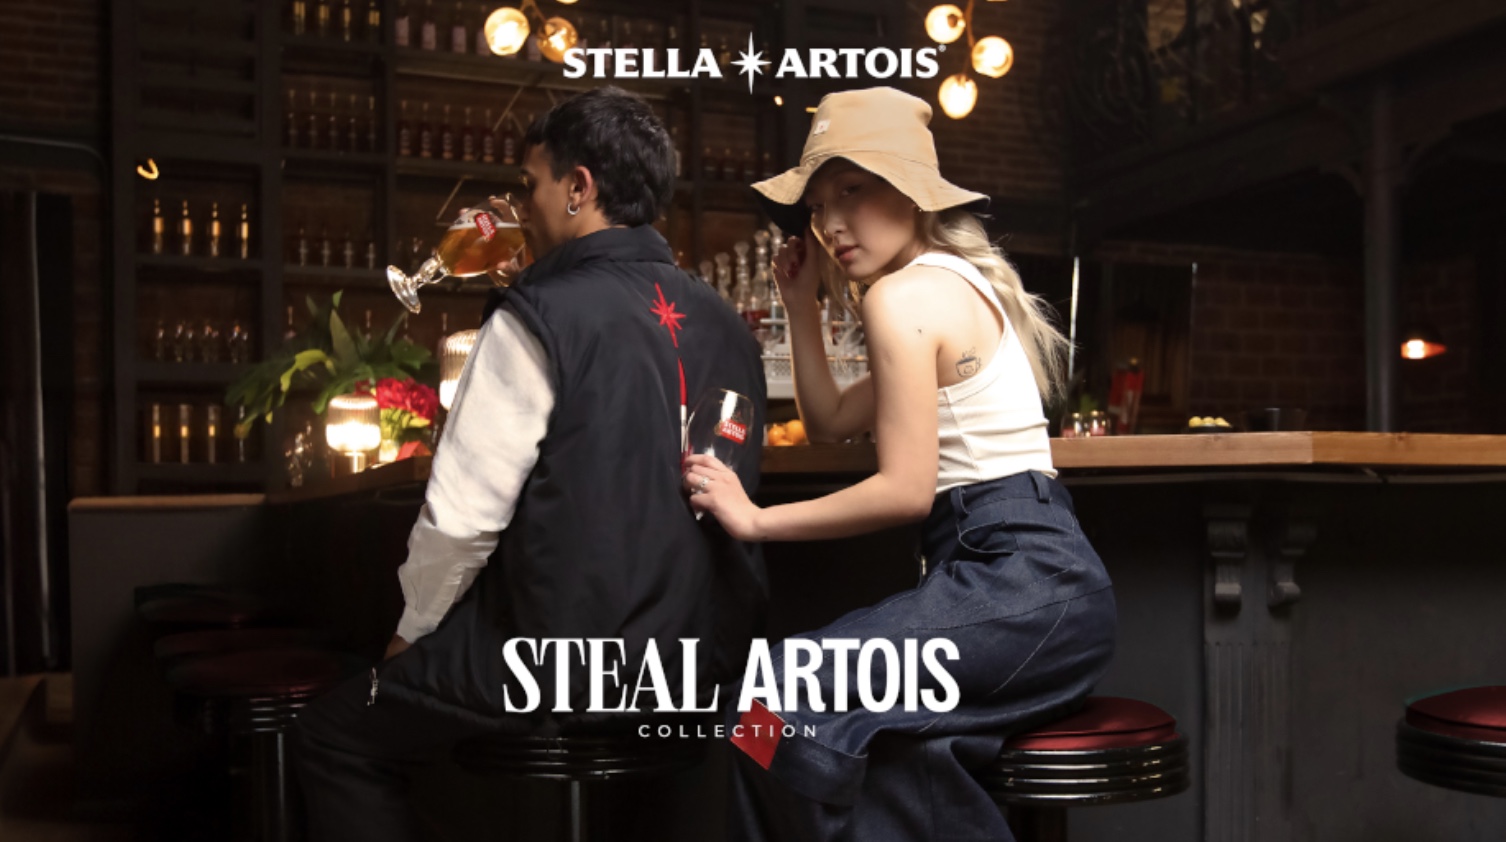 Stella Artois создал коллекцию одежды для похищения бокала для пива